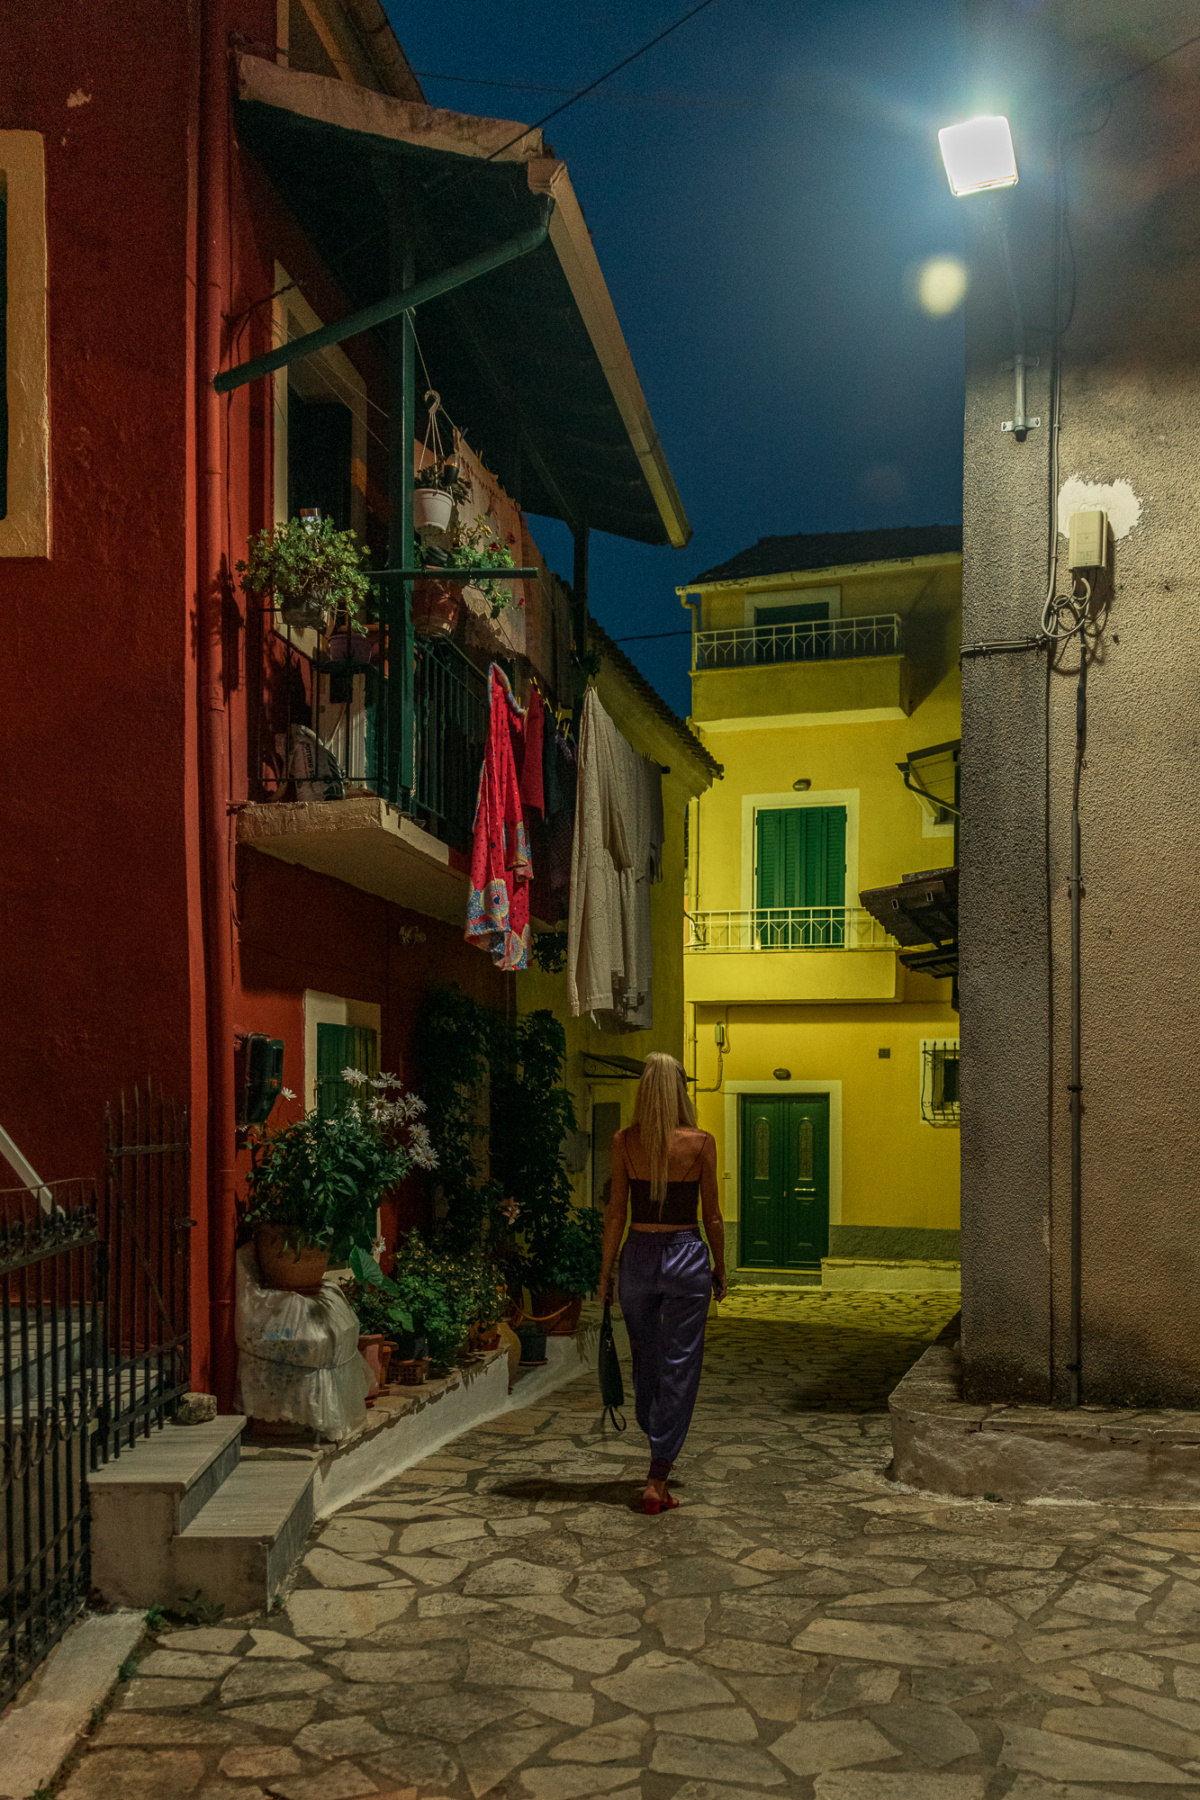 nighttime in corfu